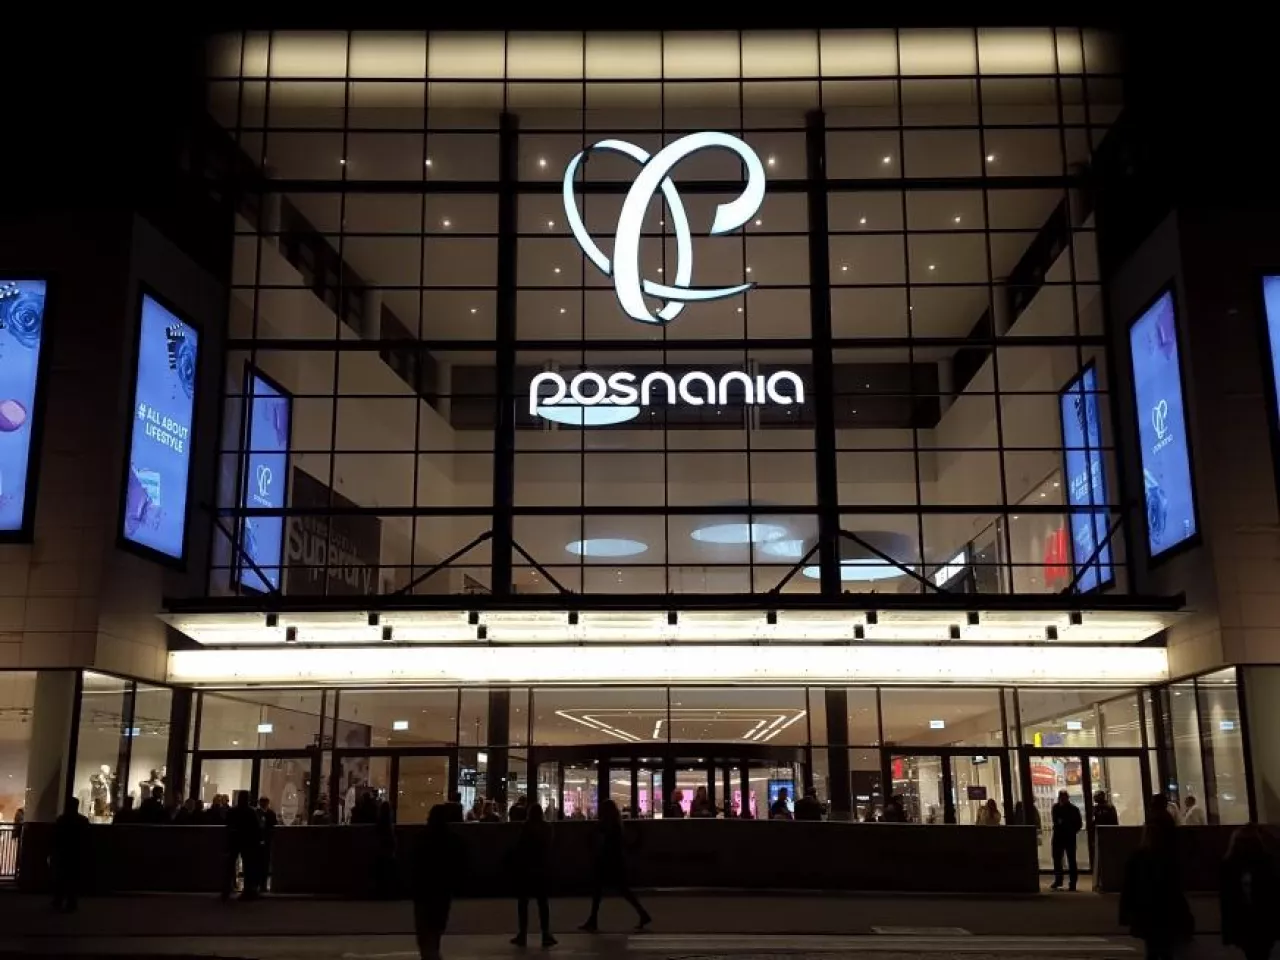 Na zdj. centrum handlowe Posnania w noc otwarcia (fot. wiadomoscihandlowe.pl)